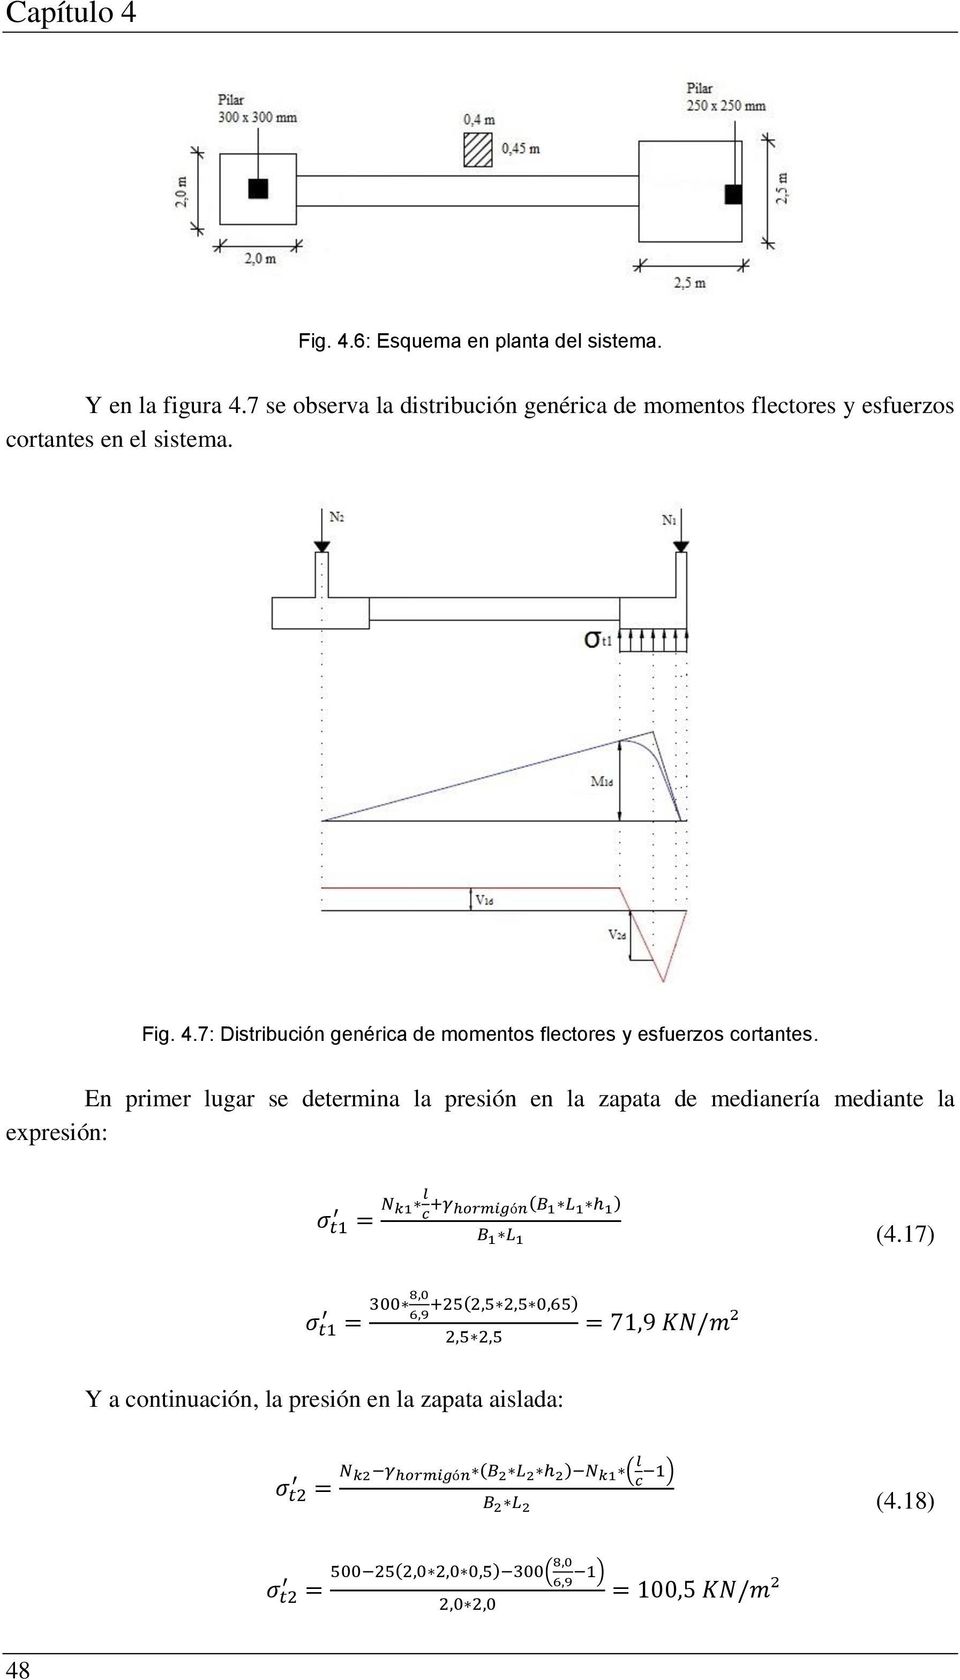 Fig. 4.7: Distribución genérica de momentos flectores y esfuerzos cortantes.